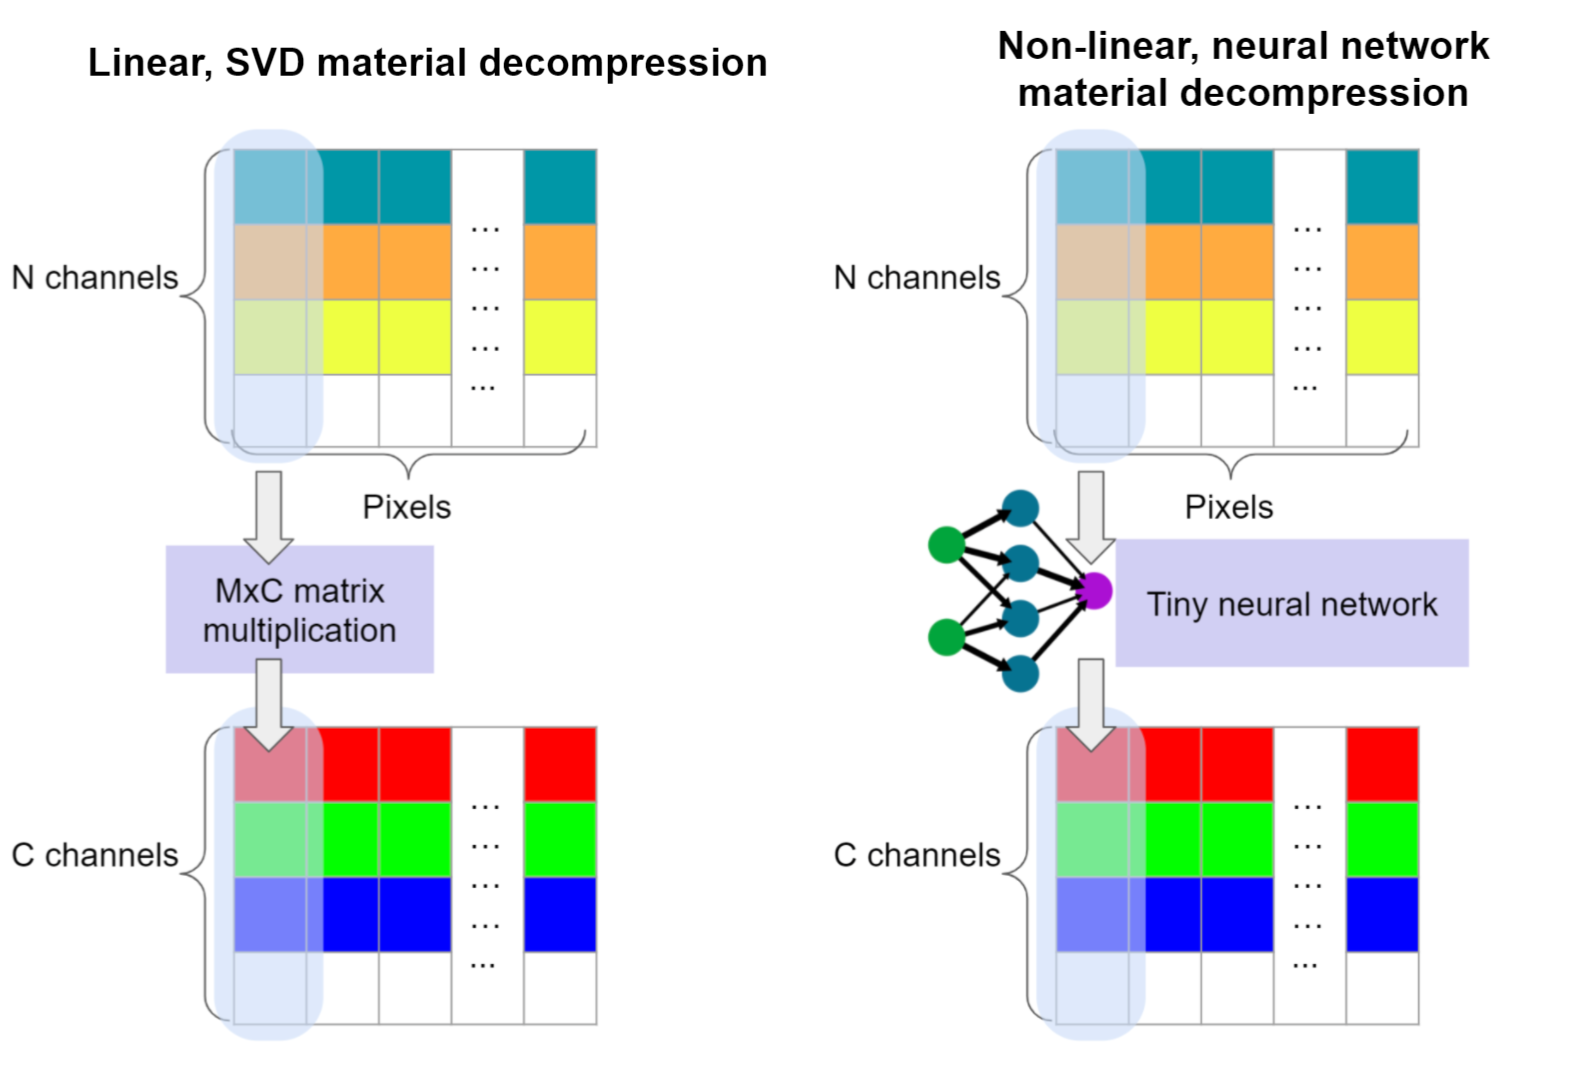 Предлагаемая нейронная декомпрессия материала (справа) похожа на SVD декомпрессию (слева), но вместо матричного умножения использует крошечную, локальную потексельную нейронную сеть, которая может запускаться с очень малым количеством вычислений на пиксель.